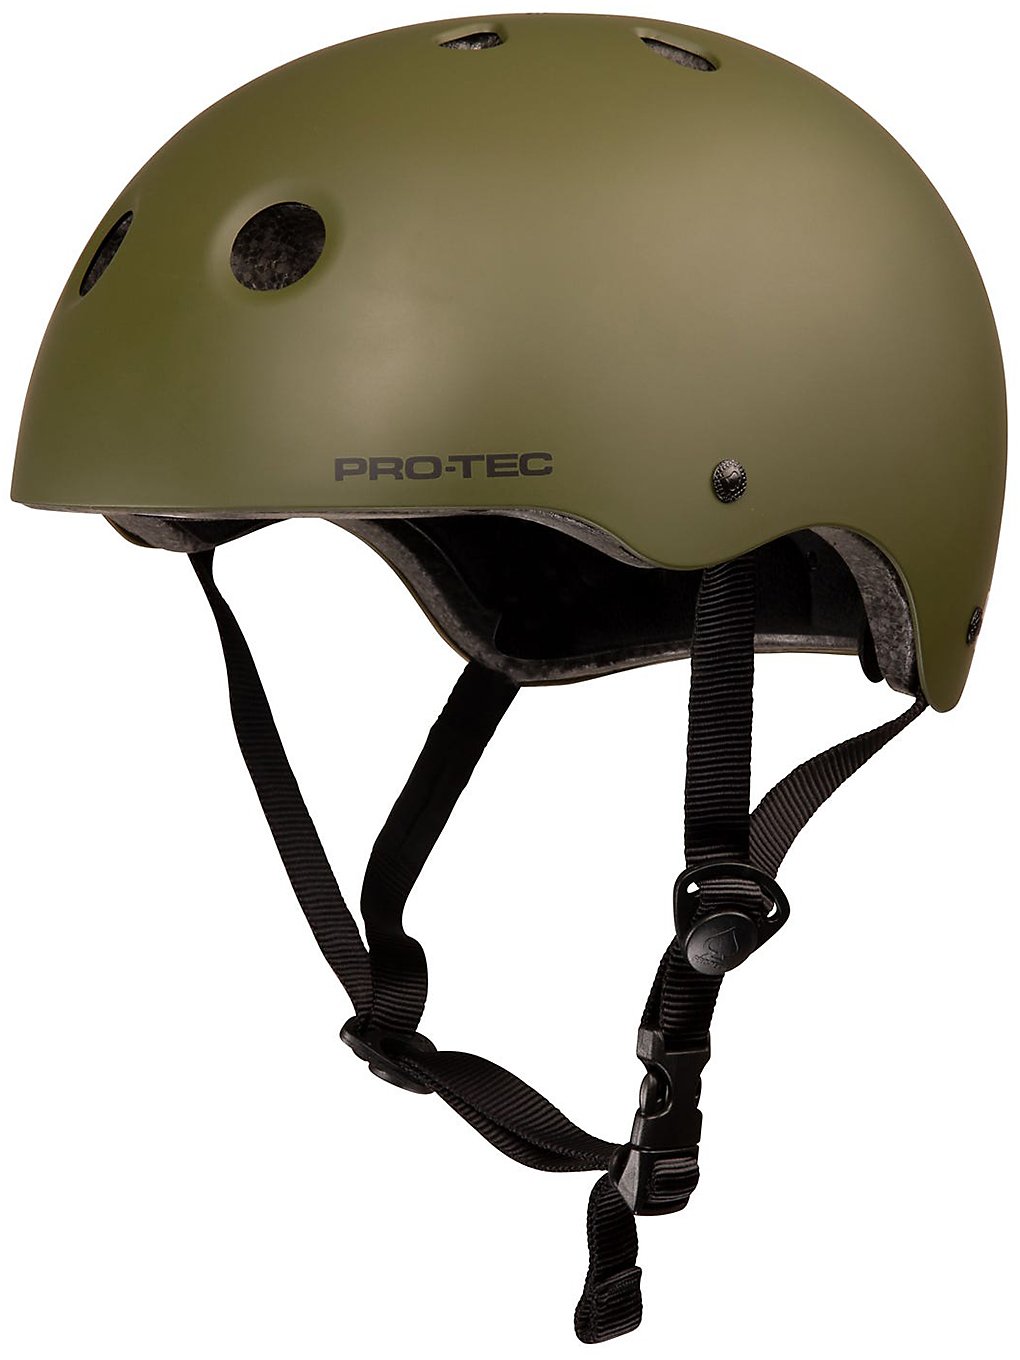 PRO-TEC Classic Certified Helmet matte olive